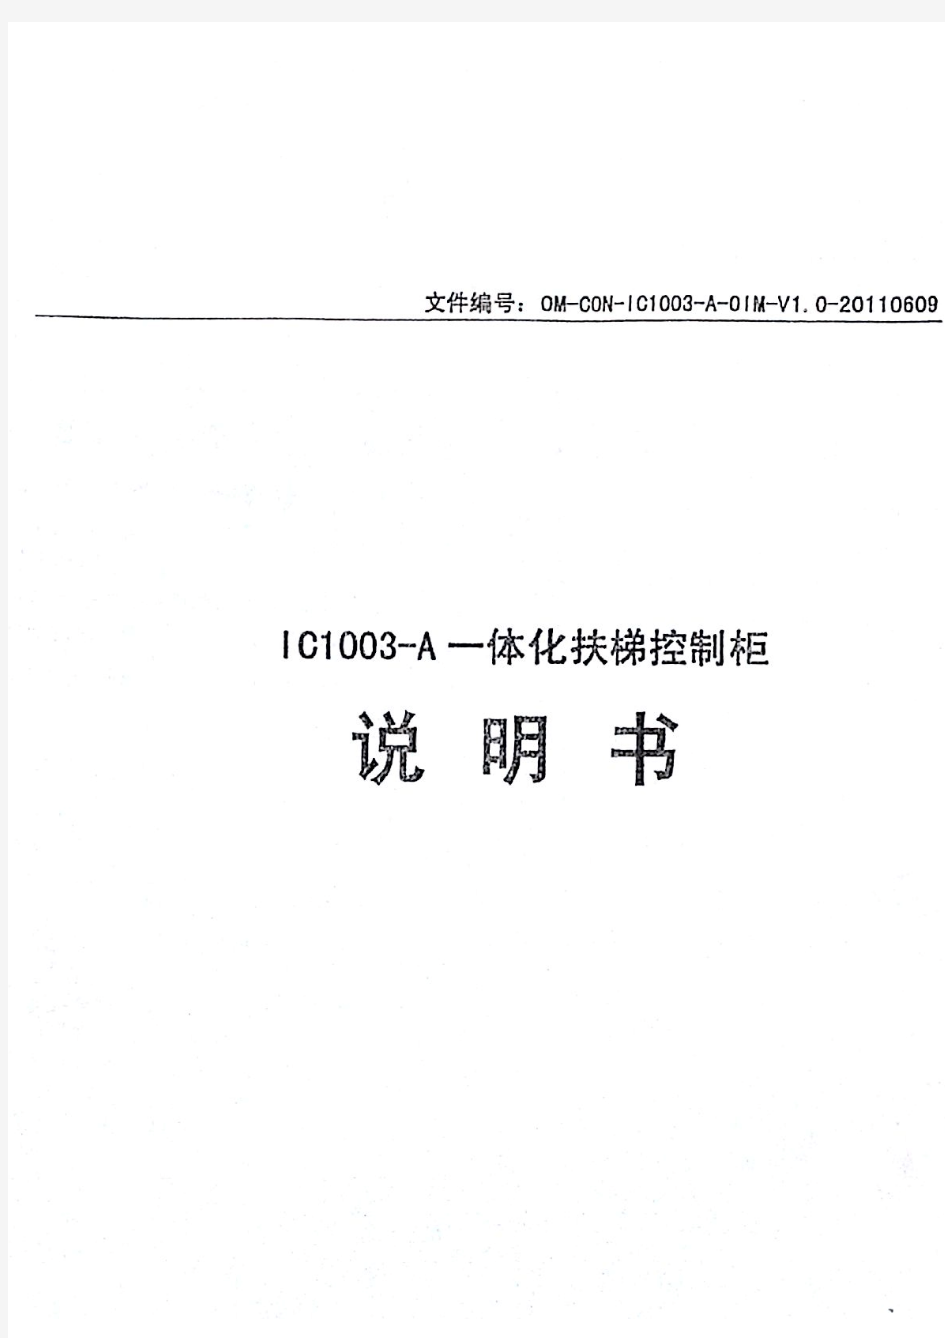 杭西奥扶梯IC1003-A一体化原理图